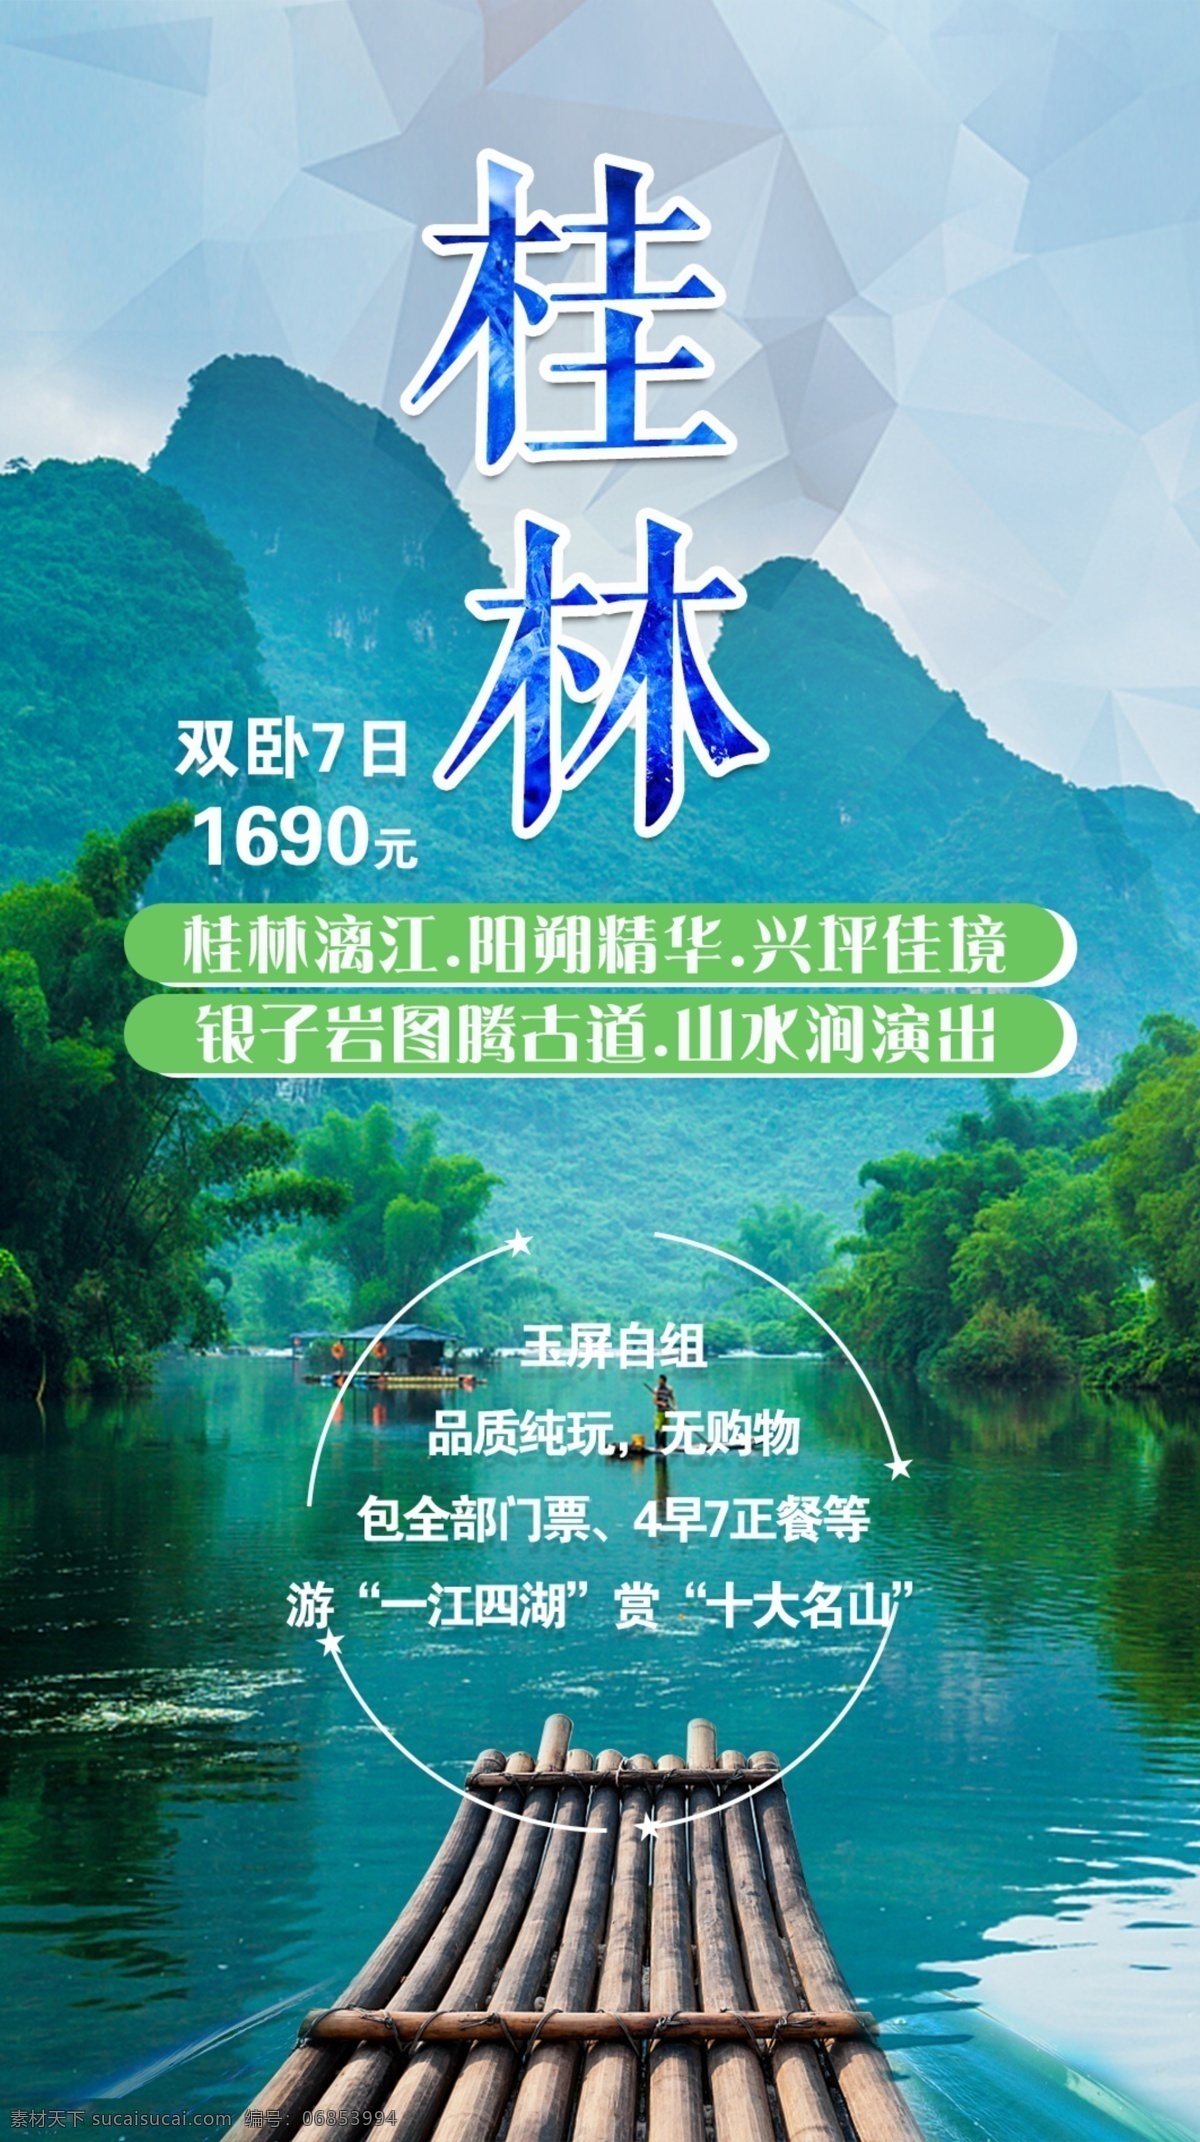 漓江 旅游海报 桂林旅游 山水图 木筏